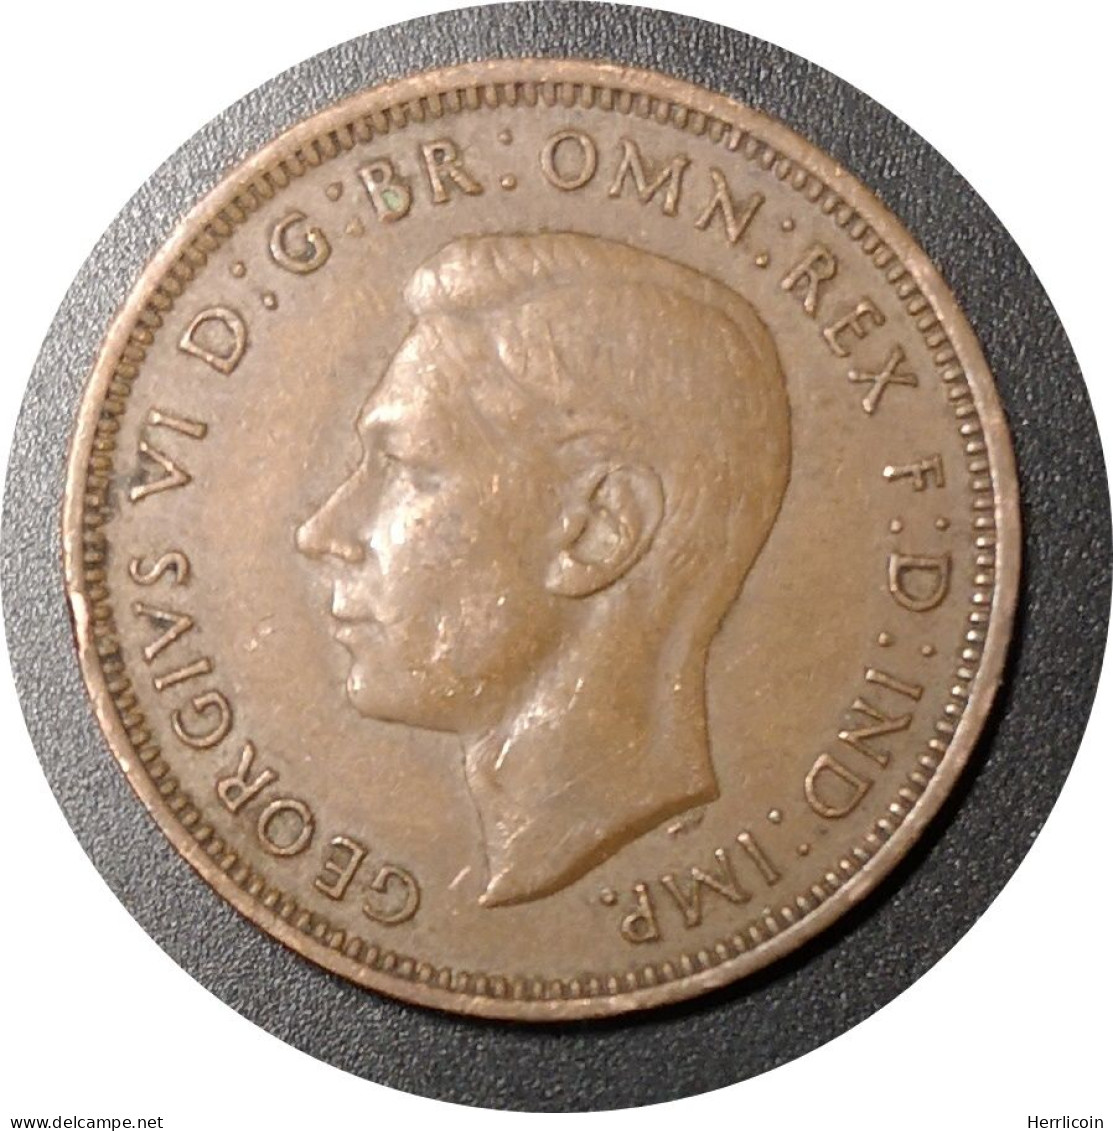 Monnaie Royaume Uni - 1943 - Demi Penny George VI Avec "IND:IMP." - C. 1/2 Penny